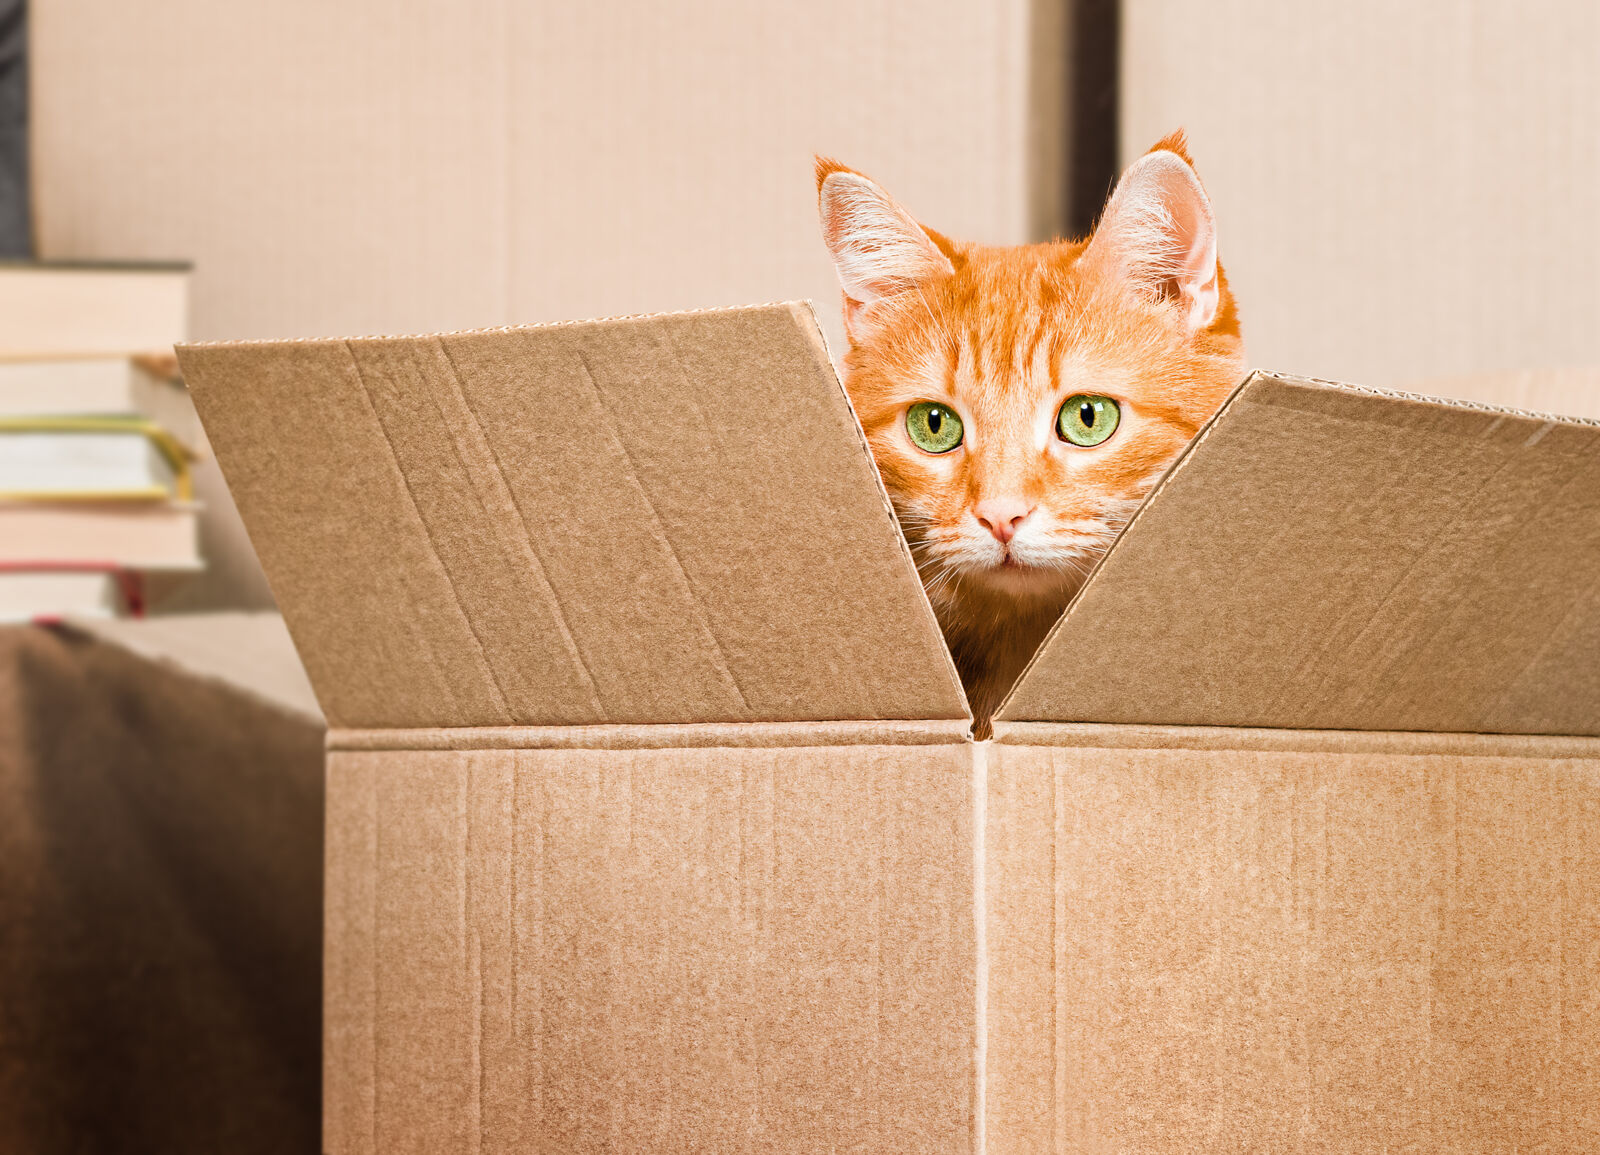 Rudy kot z zielonymi oczami siedzi w otwartym kartonie.